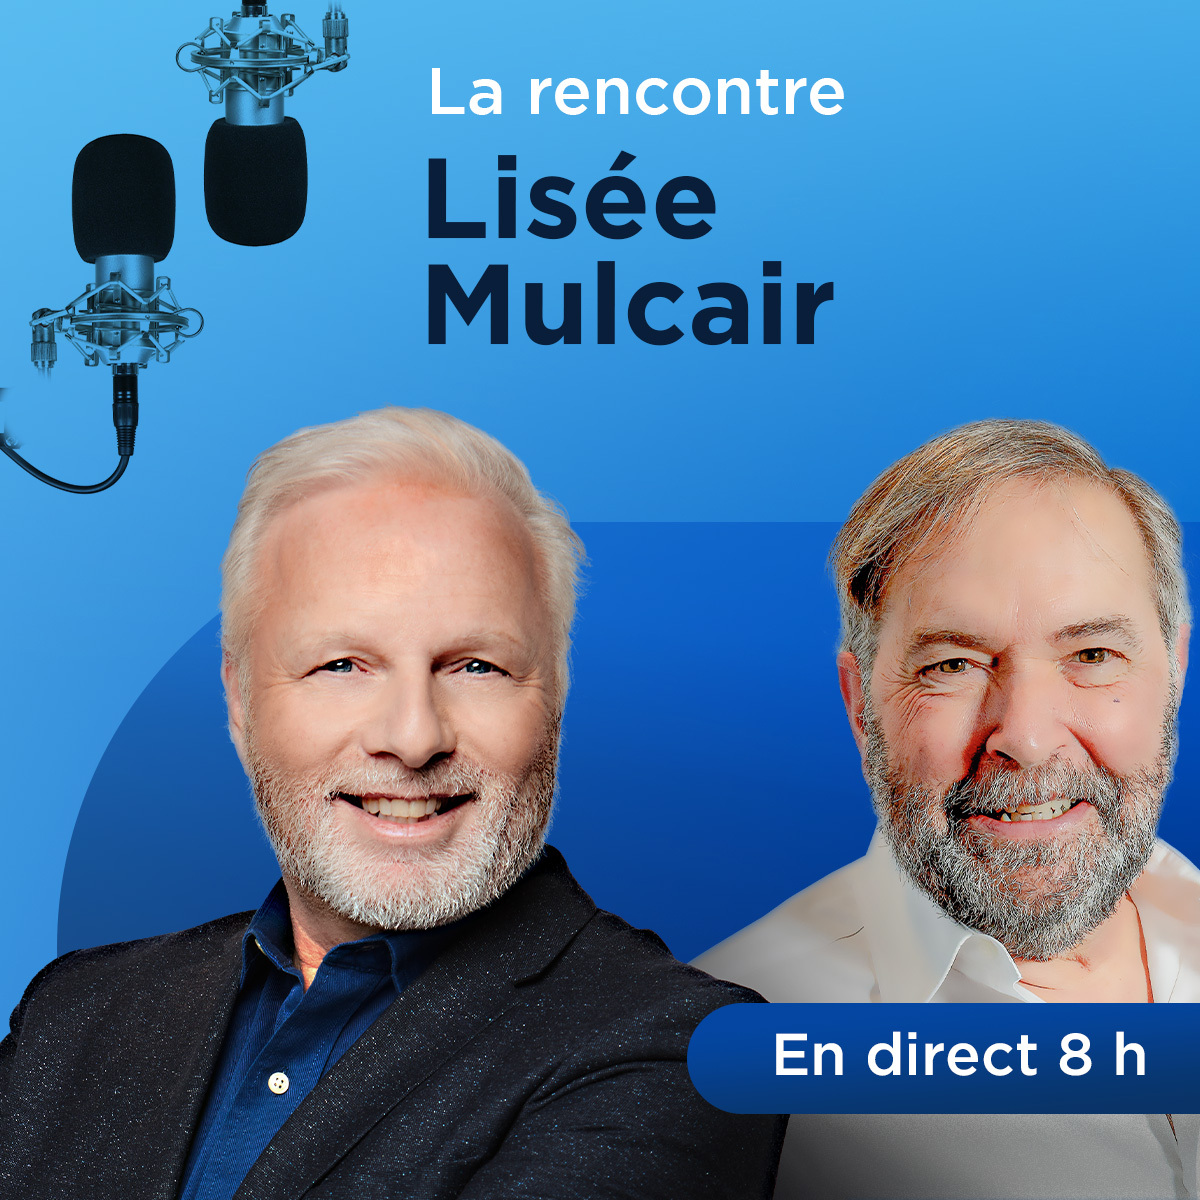 Les oppositions à Québec sont nulles, dit Mulcair